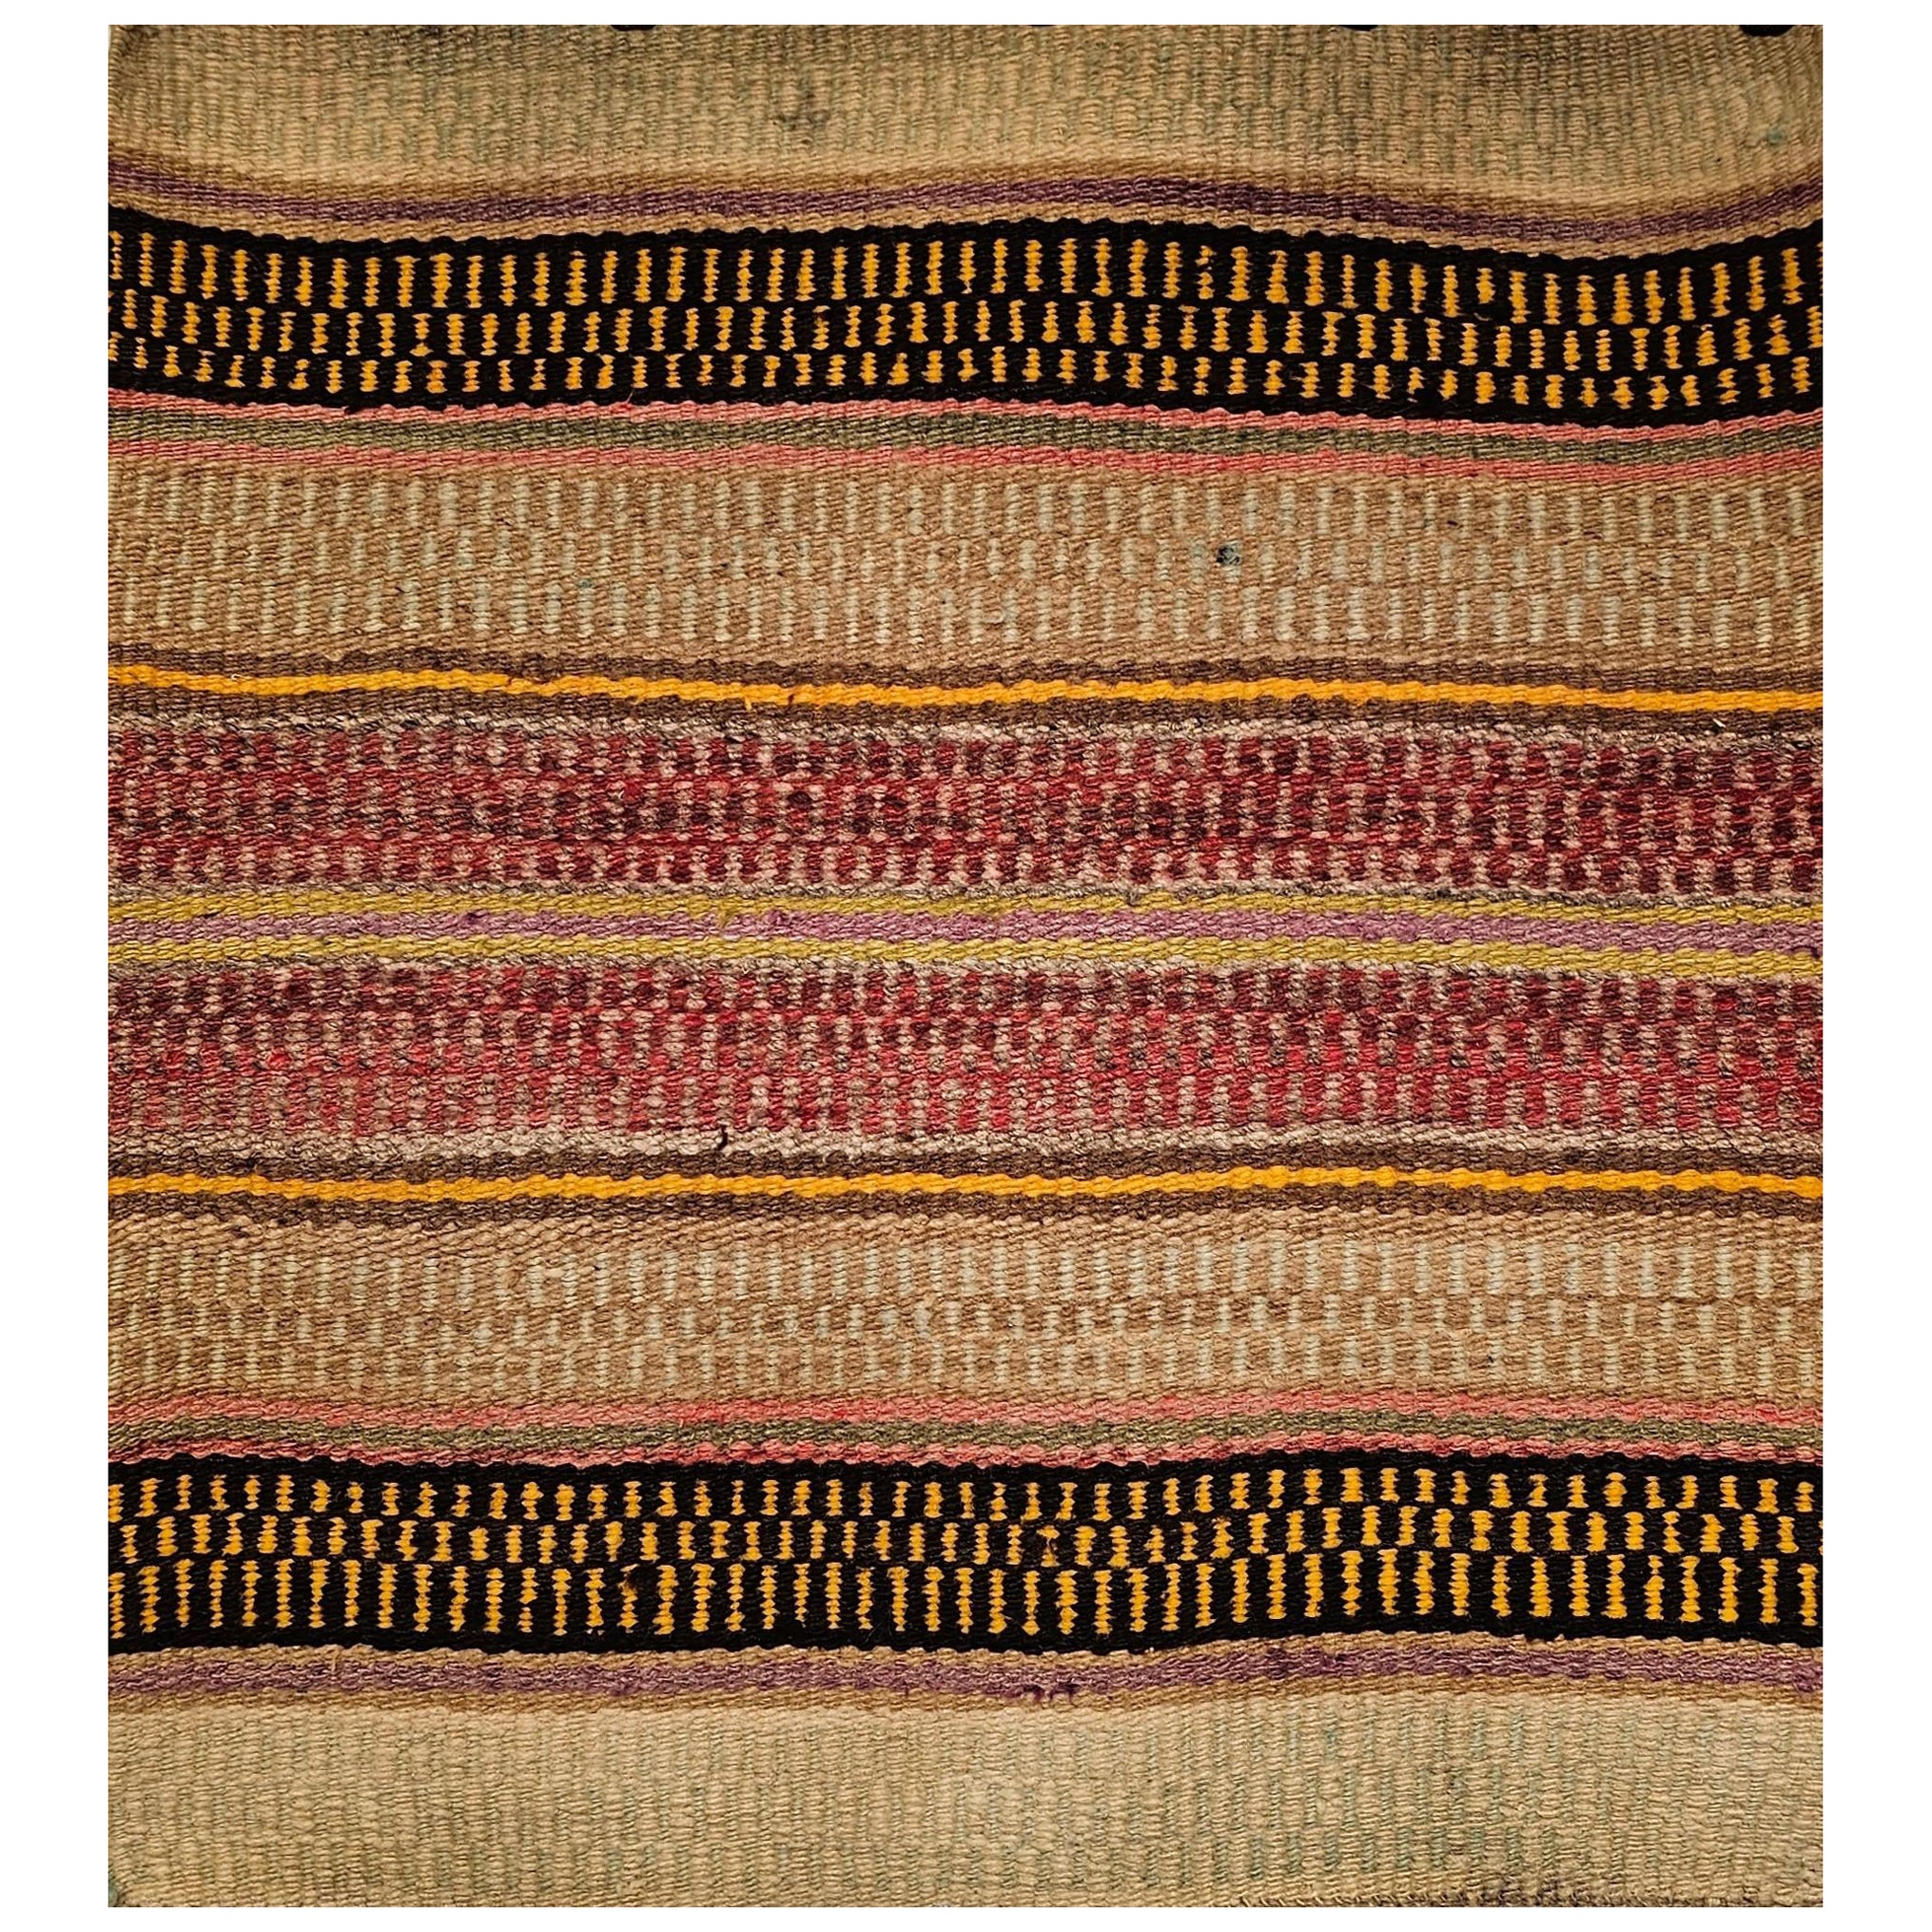 Vintage Navajo Saddle Blanket in Wide Bands Pattern in Red, Brown, Caramel 